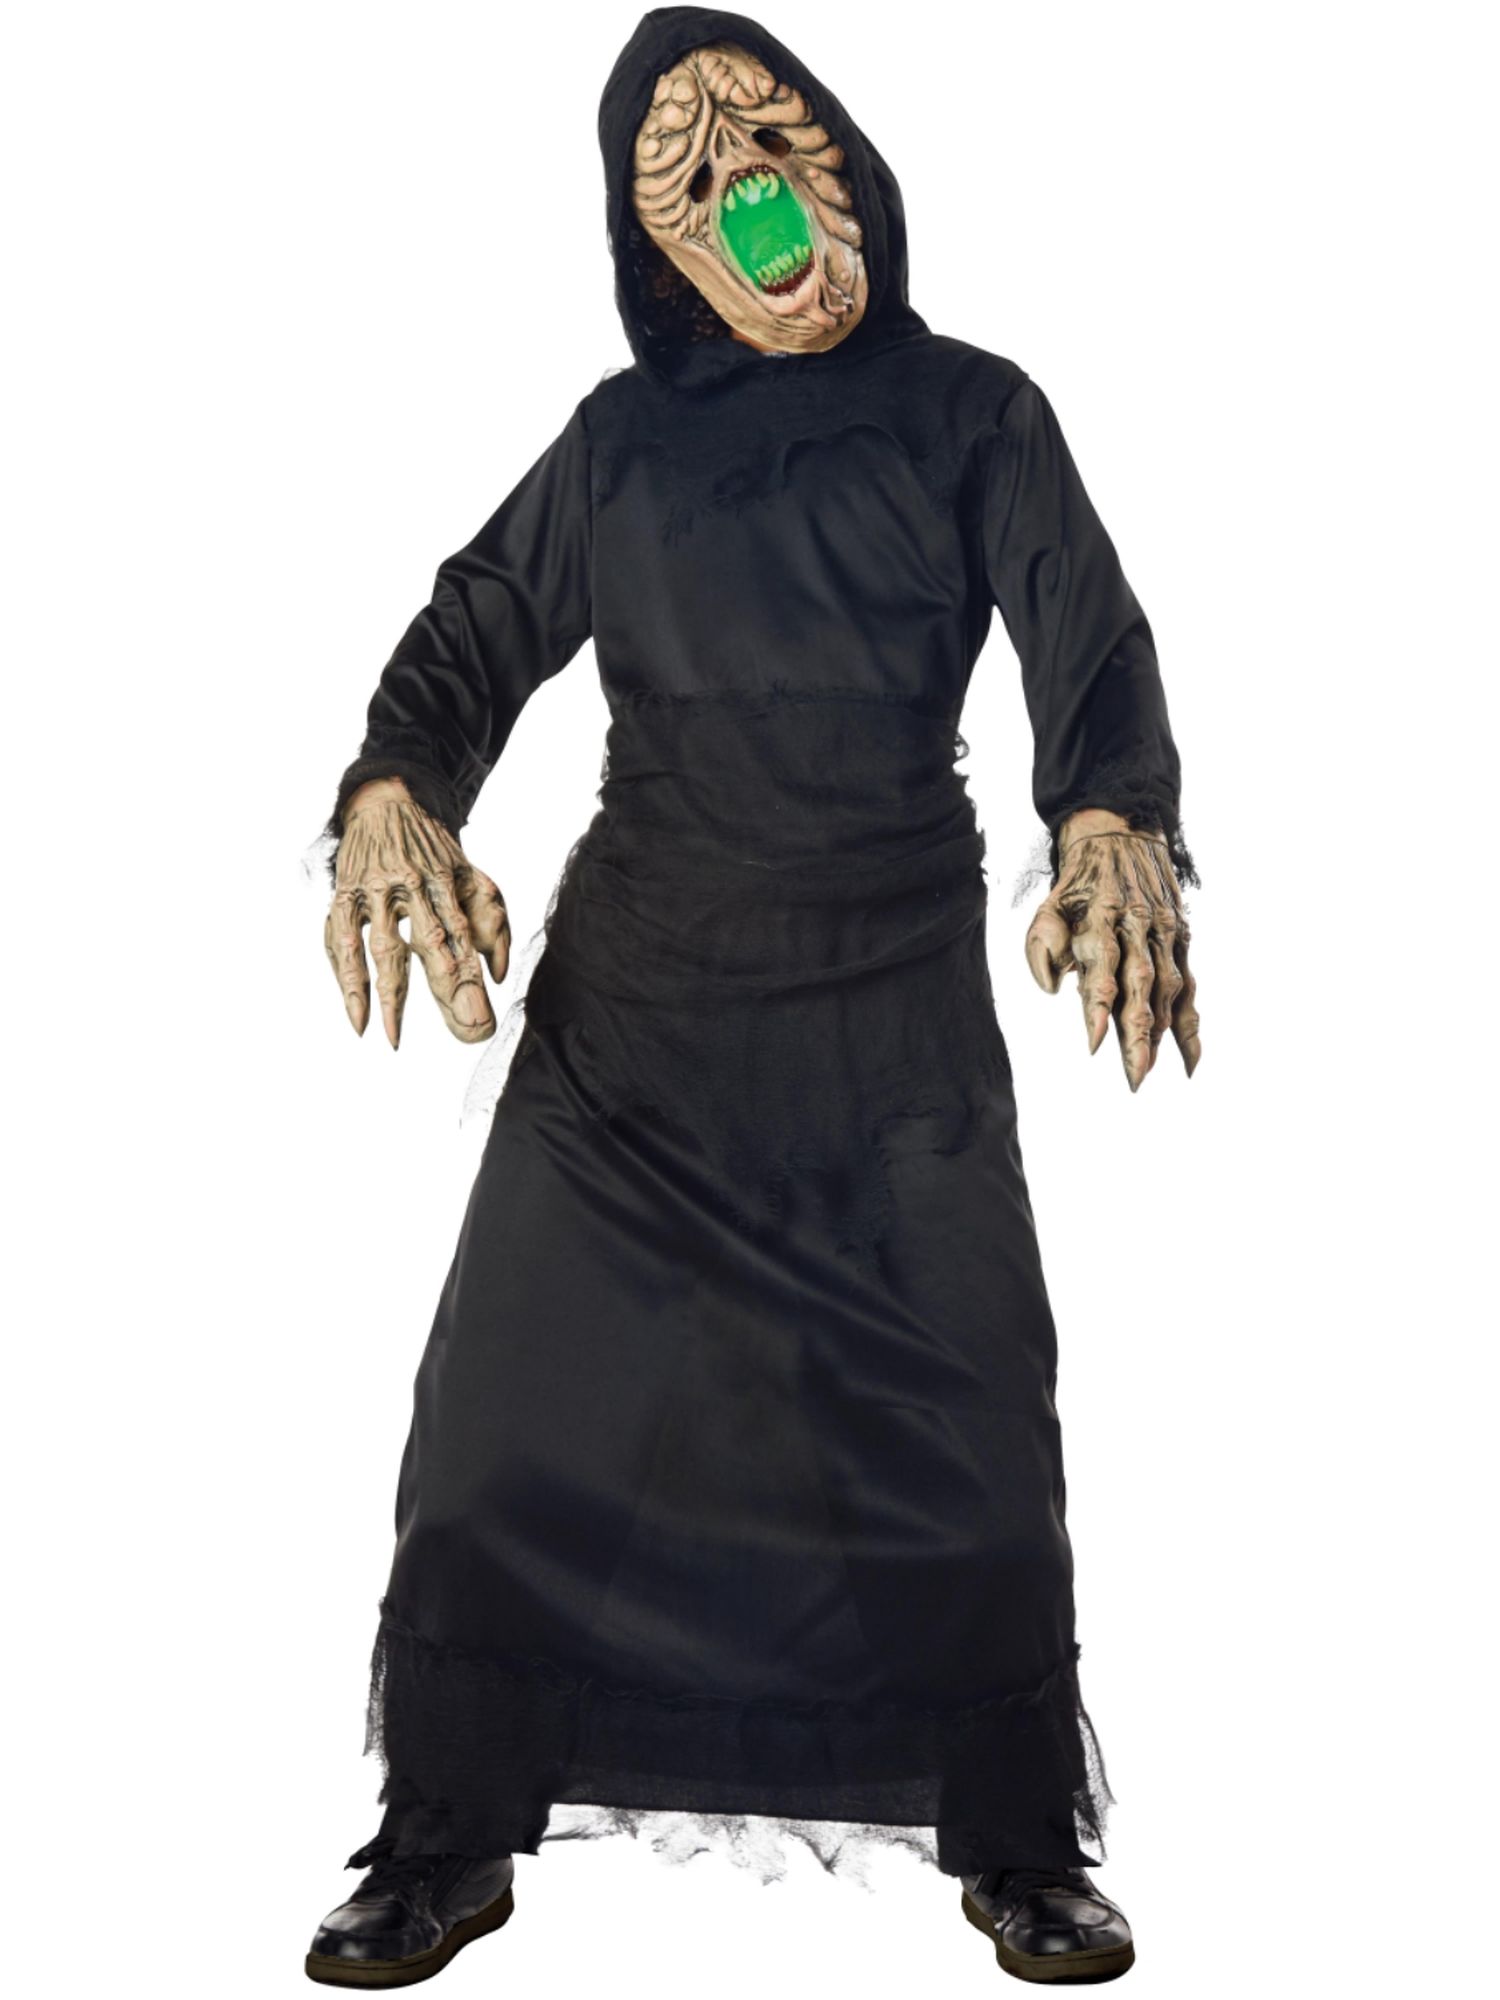 Seasons Boys Light-Up Mutant Monster Black Robe Halloween Costume M 8-10